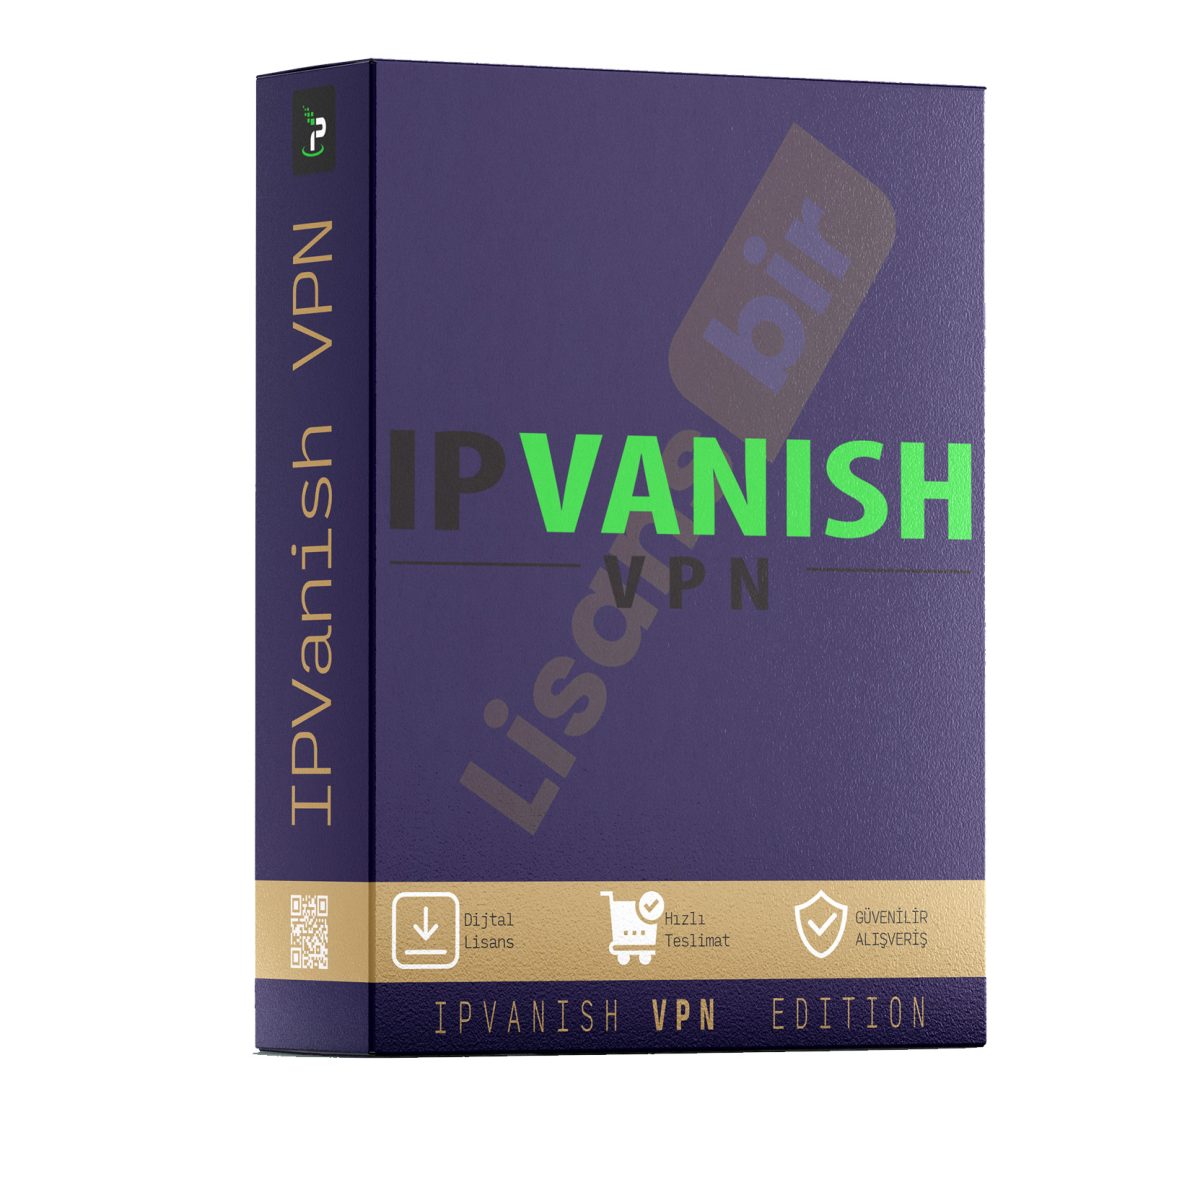 IPVanish VPN-IPVanish VPN 1 Yıl-IPVanish VPN 1 Yıl Satın Al-IPVanish VPN 1 Yıl ücretsiz